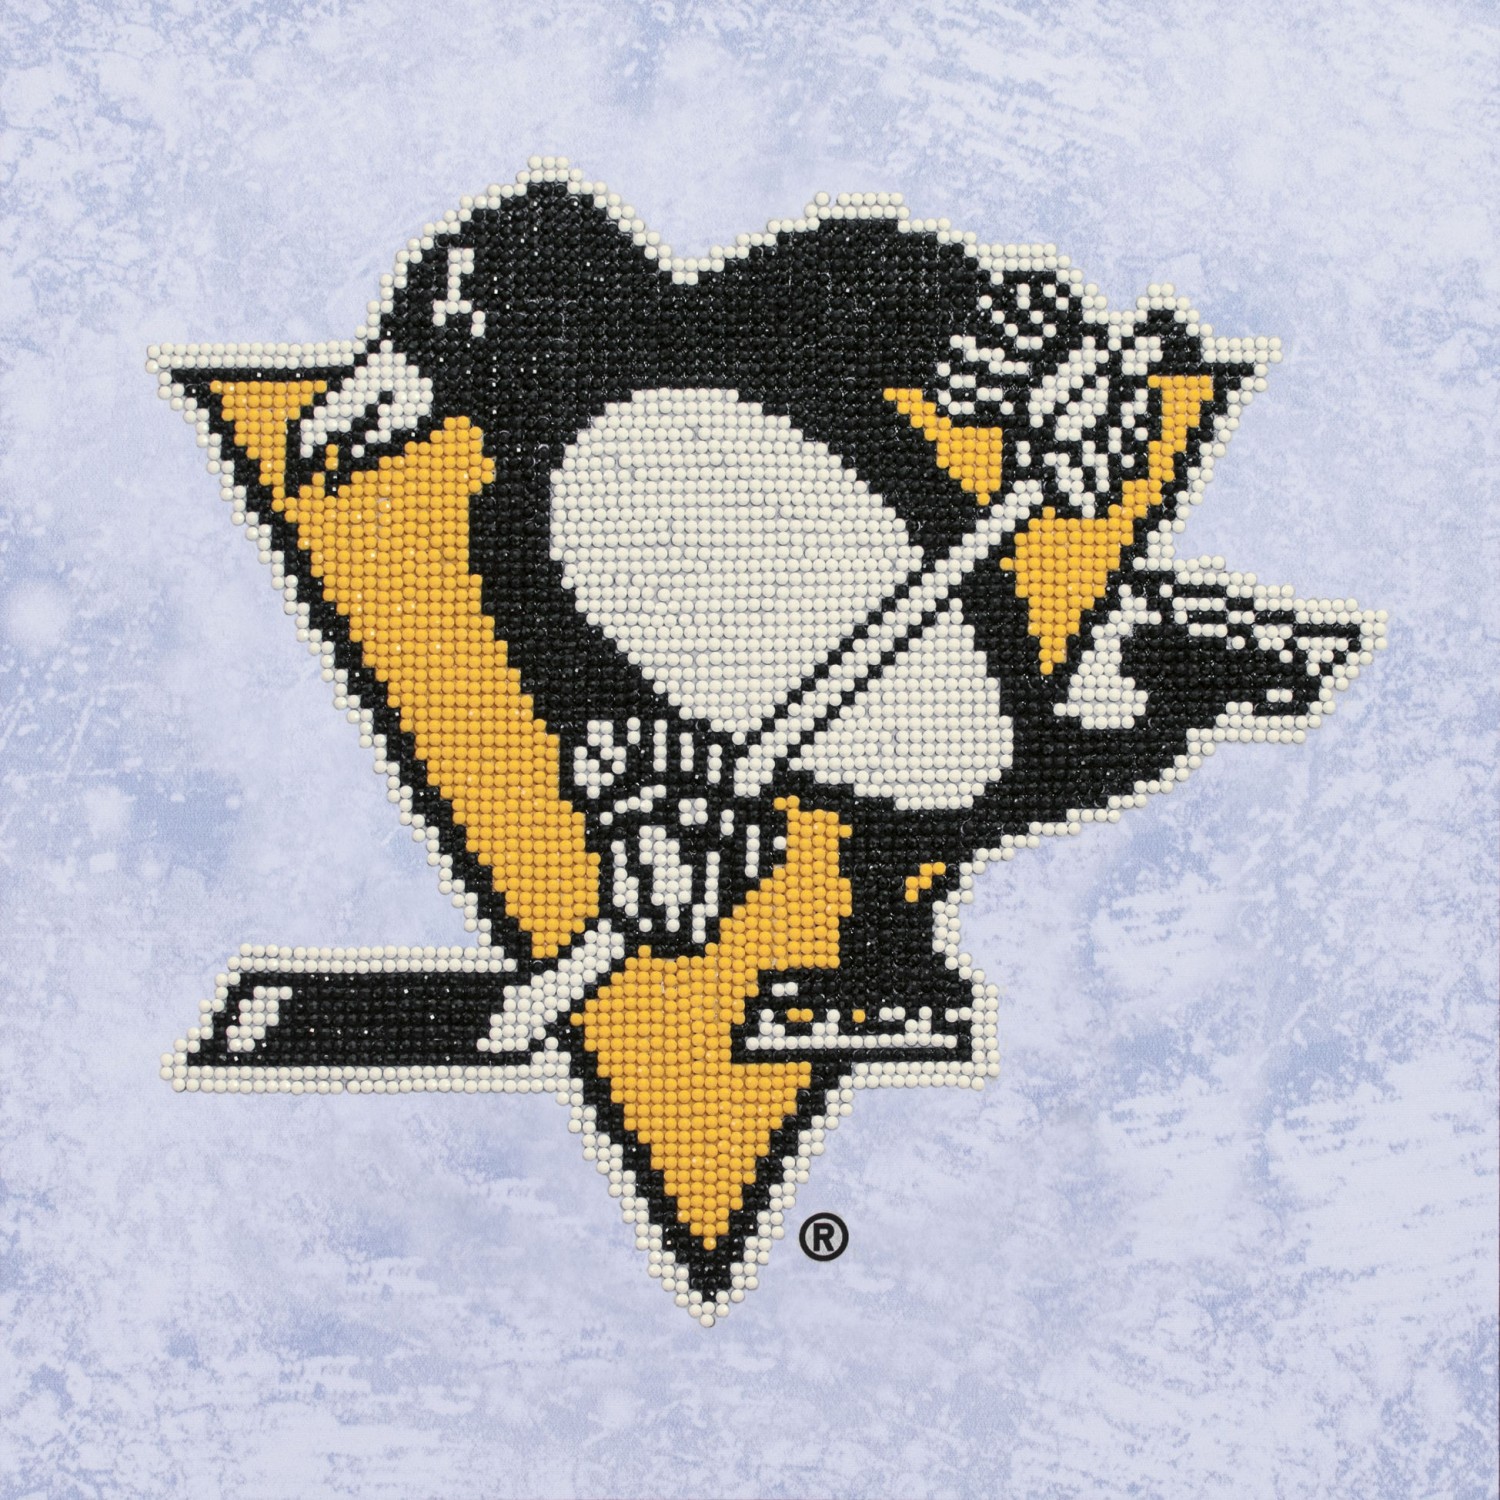 Pittsburgh Penguins Illustration - Diamond Paintings 